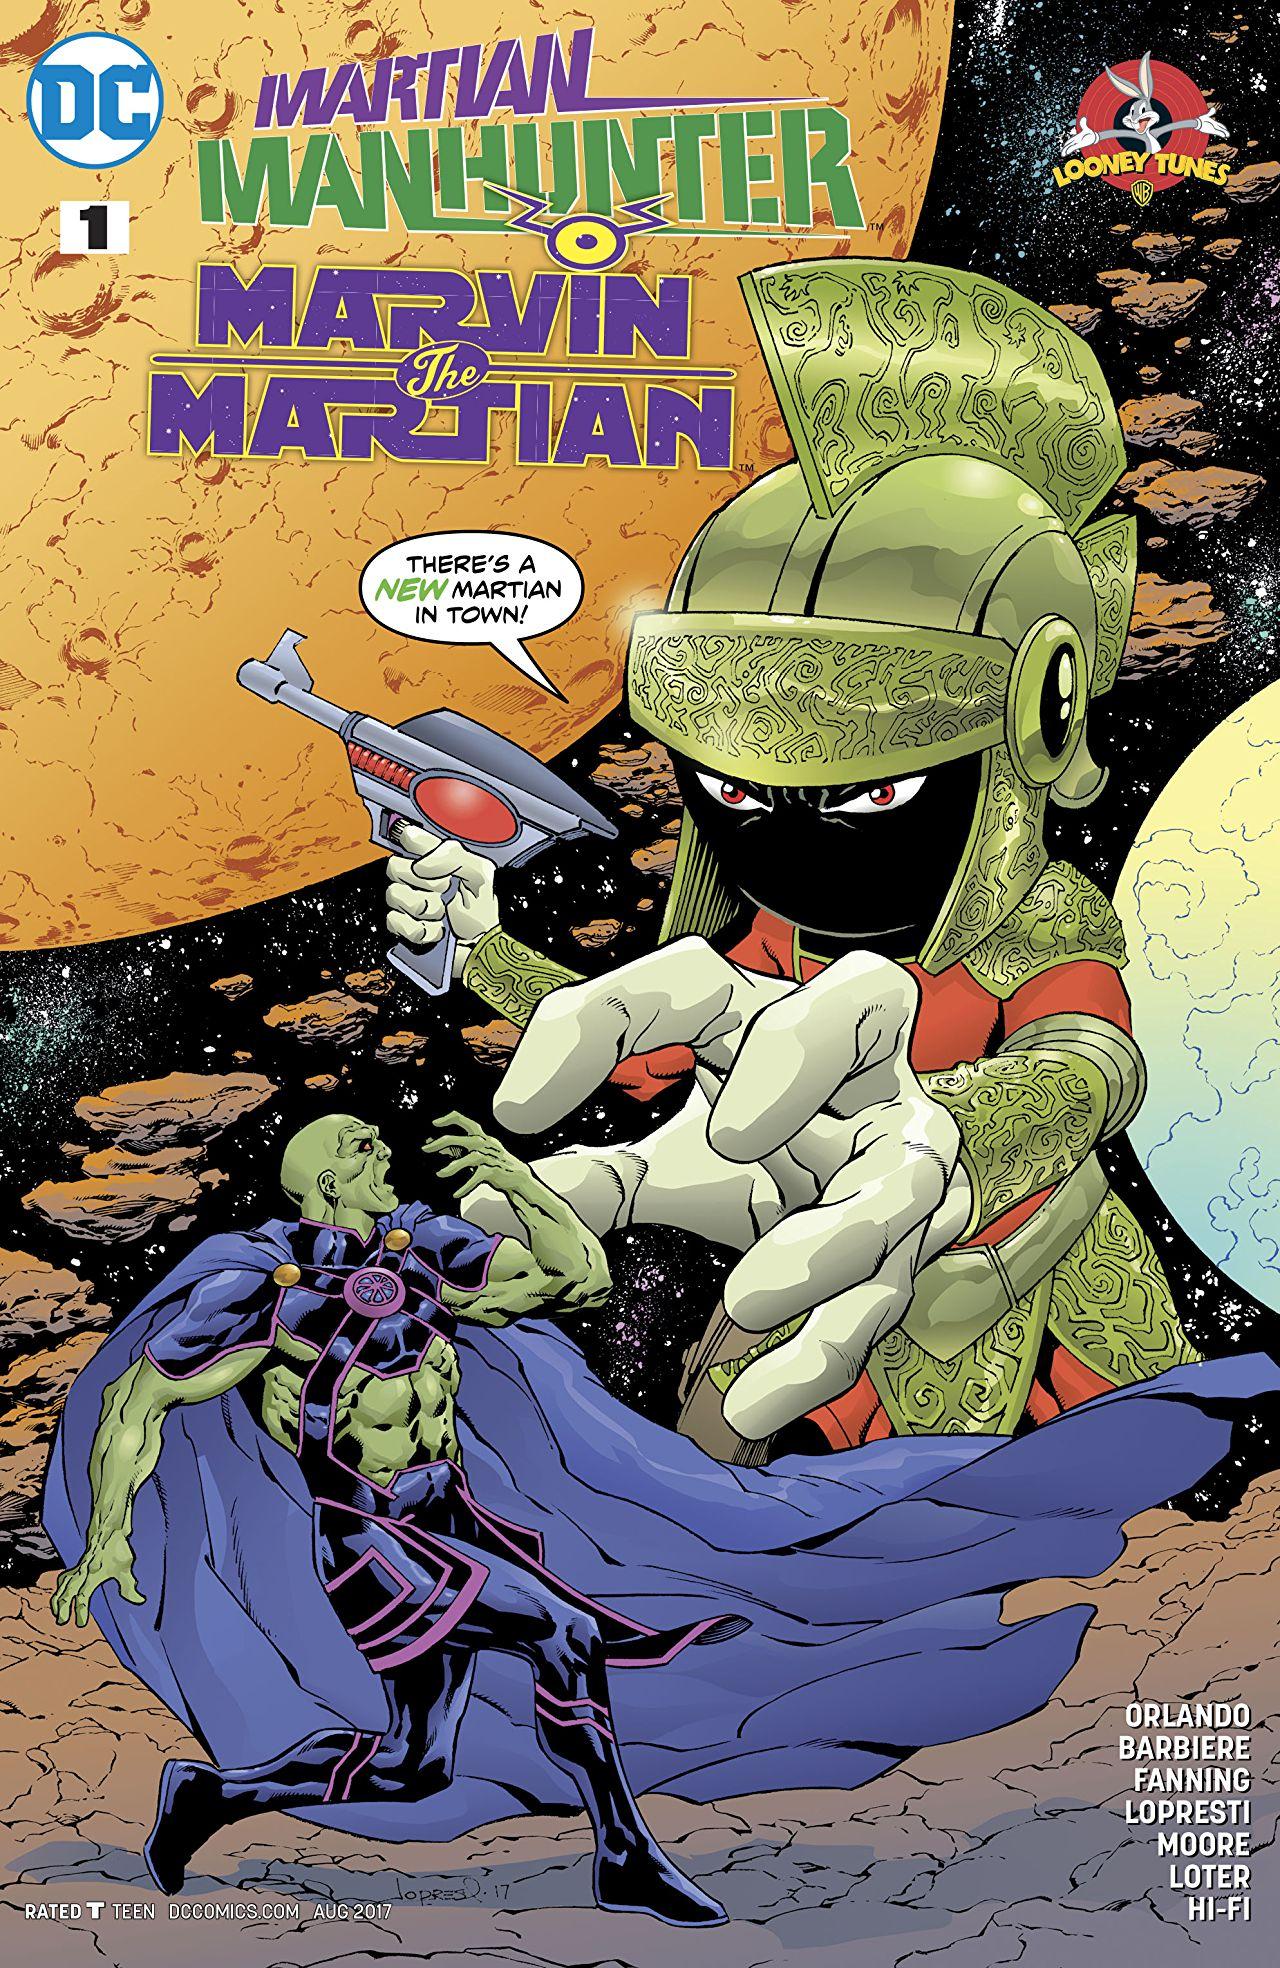 Martian Manhunter/Marvin the Martian Special Vol. 1 #1